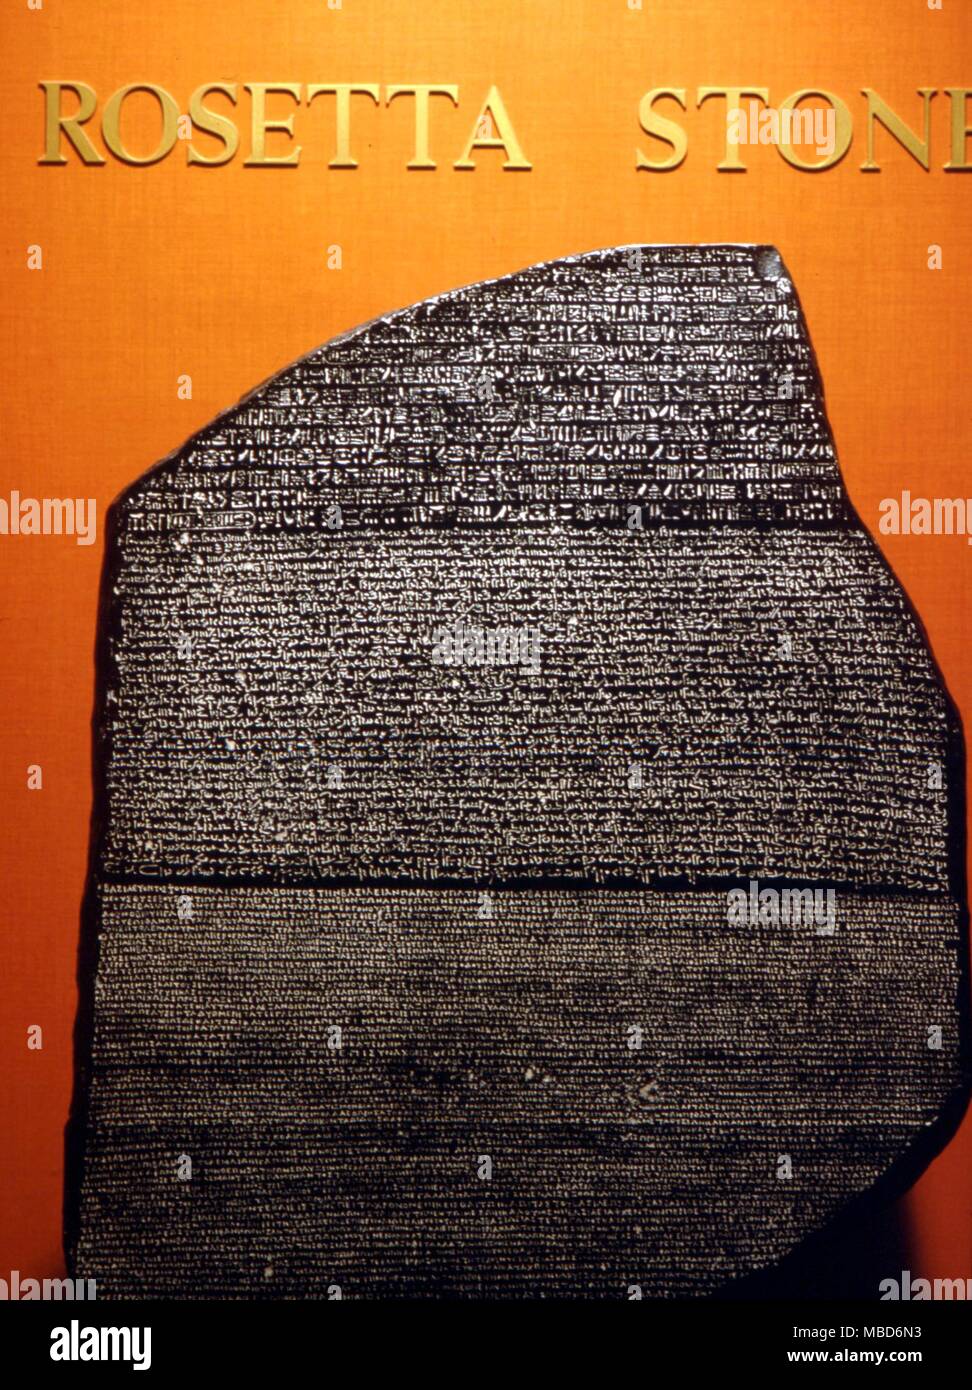 Alfabeti - Rosetta Stone - La lastra di basalto, scolpiti in parallelo-testo greco, demotic egiziano e geroglifica, che hanno permesso di Champollion di decifrare gli antichi geroglifici Egiziani. In facsimile il Museo Egizio, San Jose 1669 Foto Stock